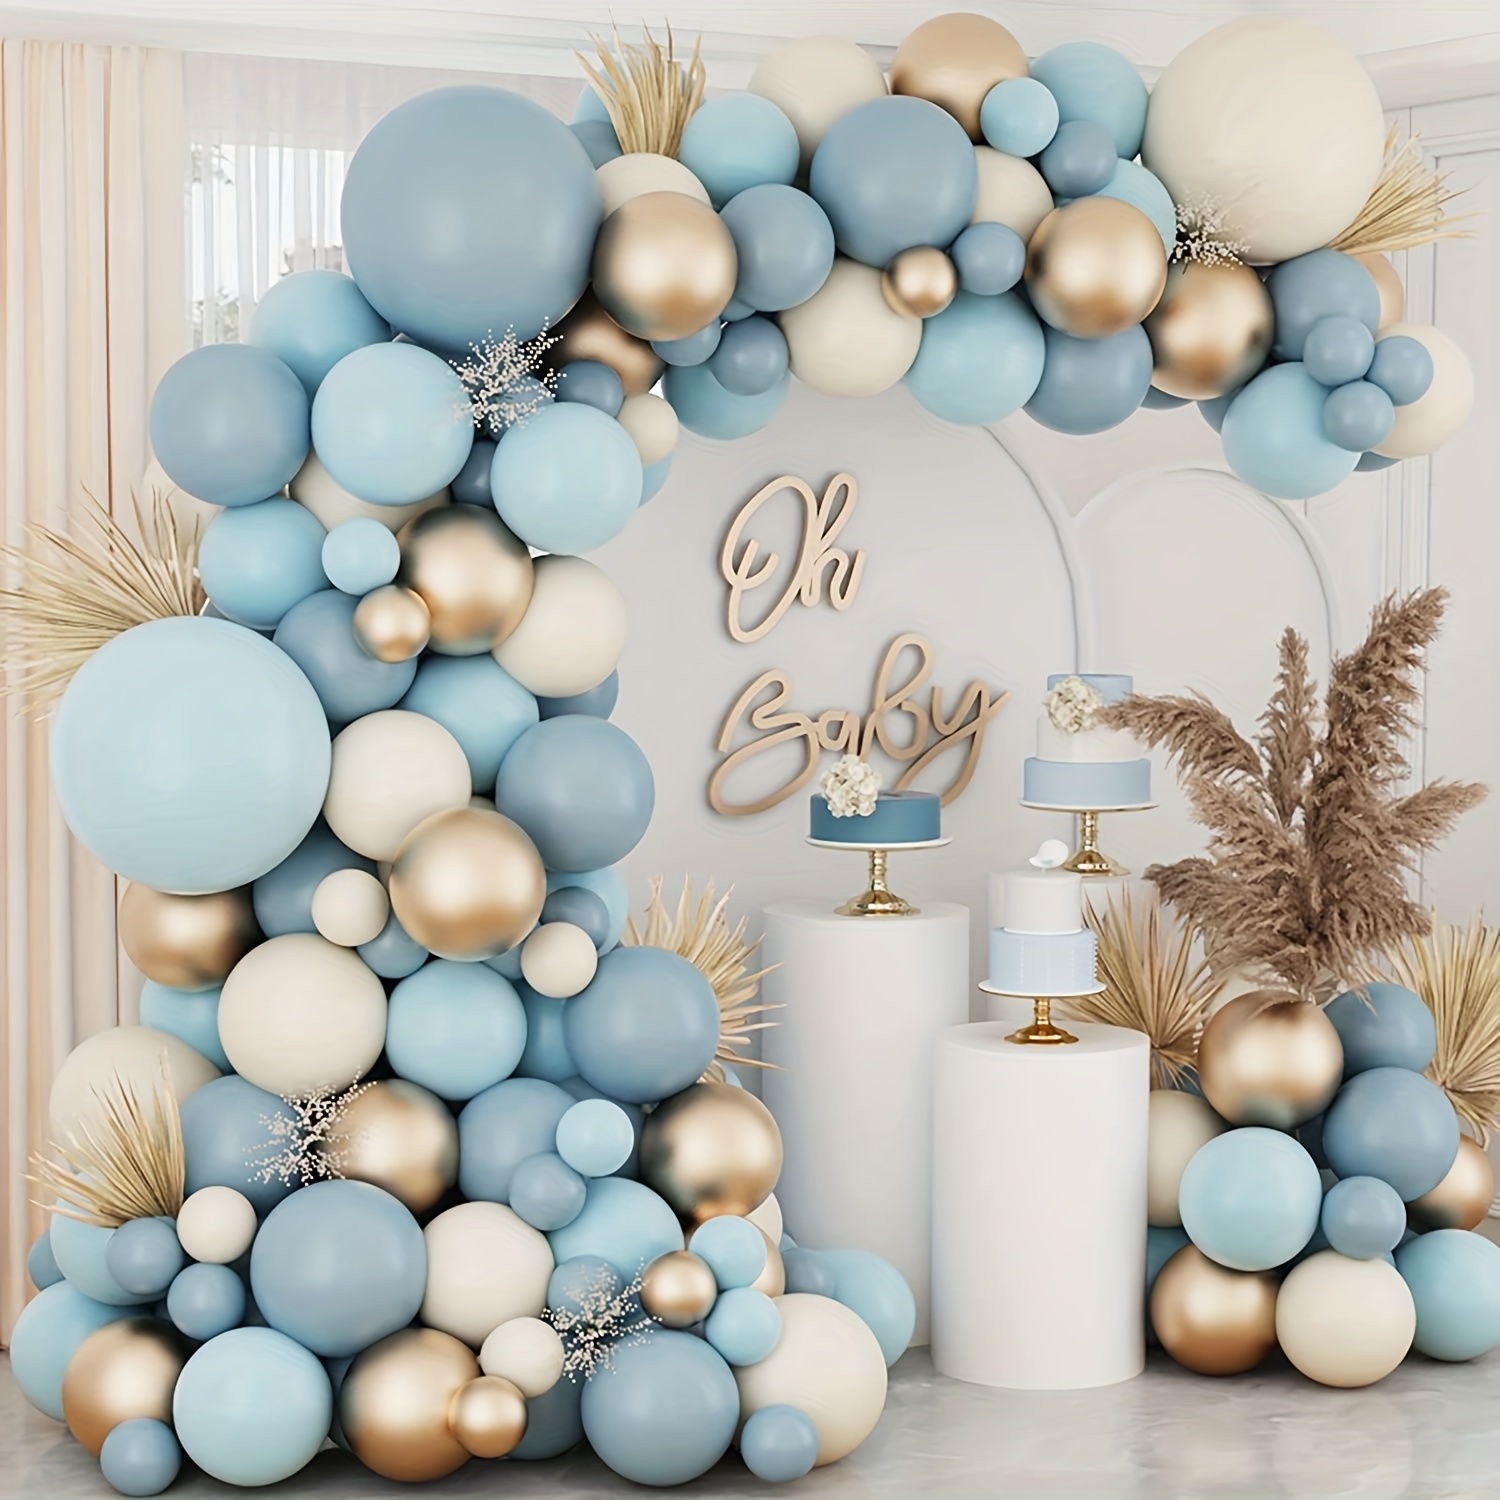  Decoraciones de baby shower para niño, globos blancos y azules  para decoración de baby shower, letras de bebé niño y cajas de globos  reutilizables, además de banda para papá y mamá